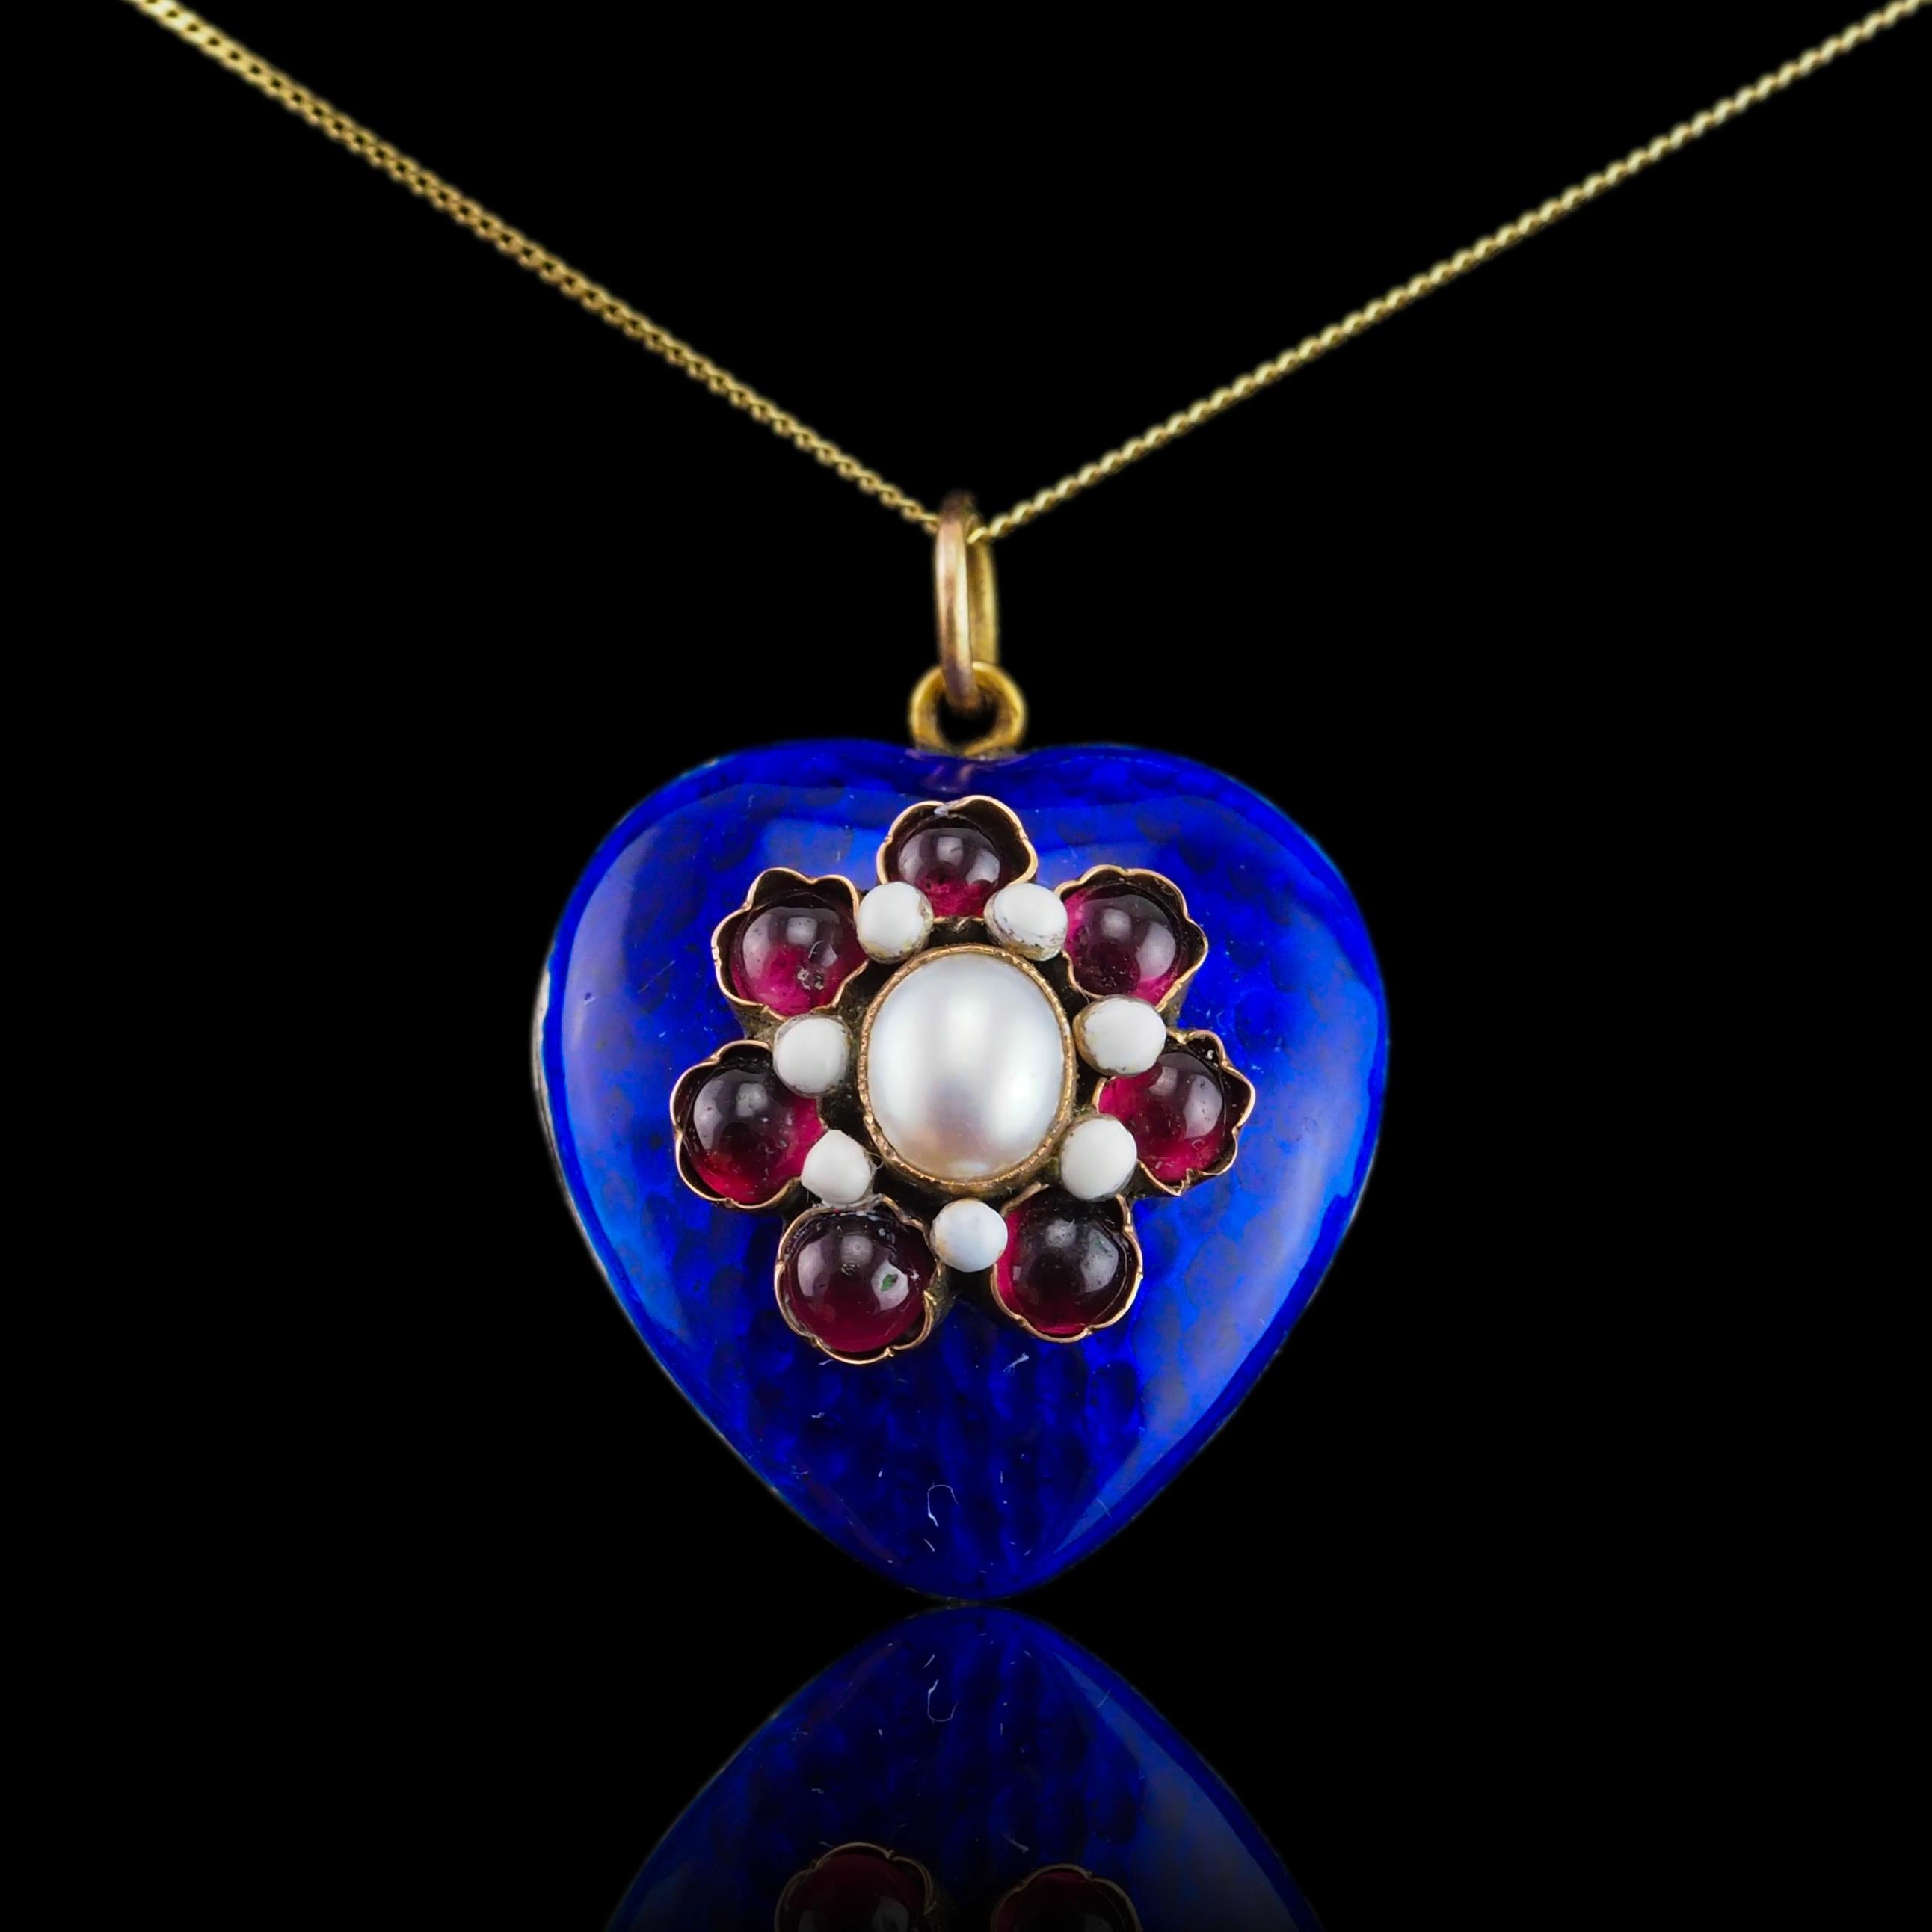 Antique Victorian Blue Enamel Garnet Heart Necklace 'Puffy' Pendant - c.1900 7